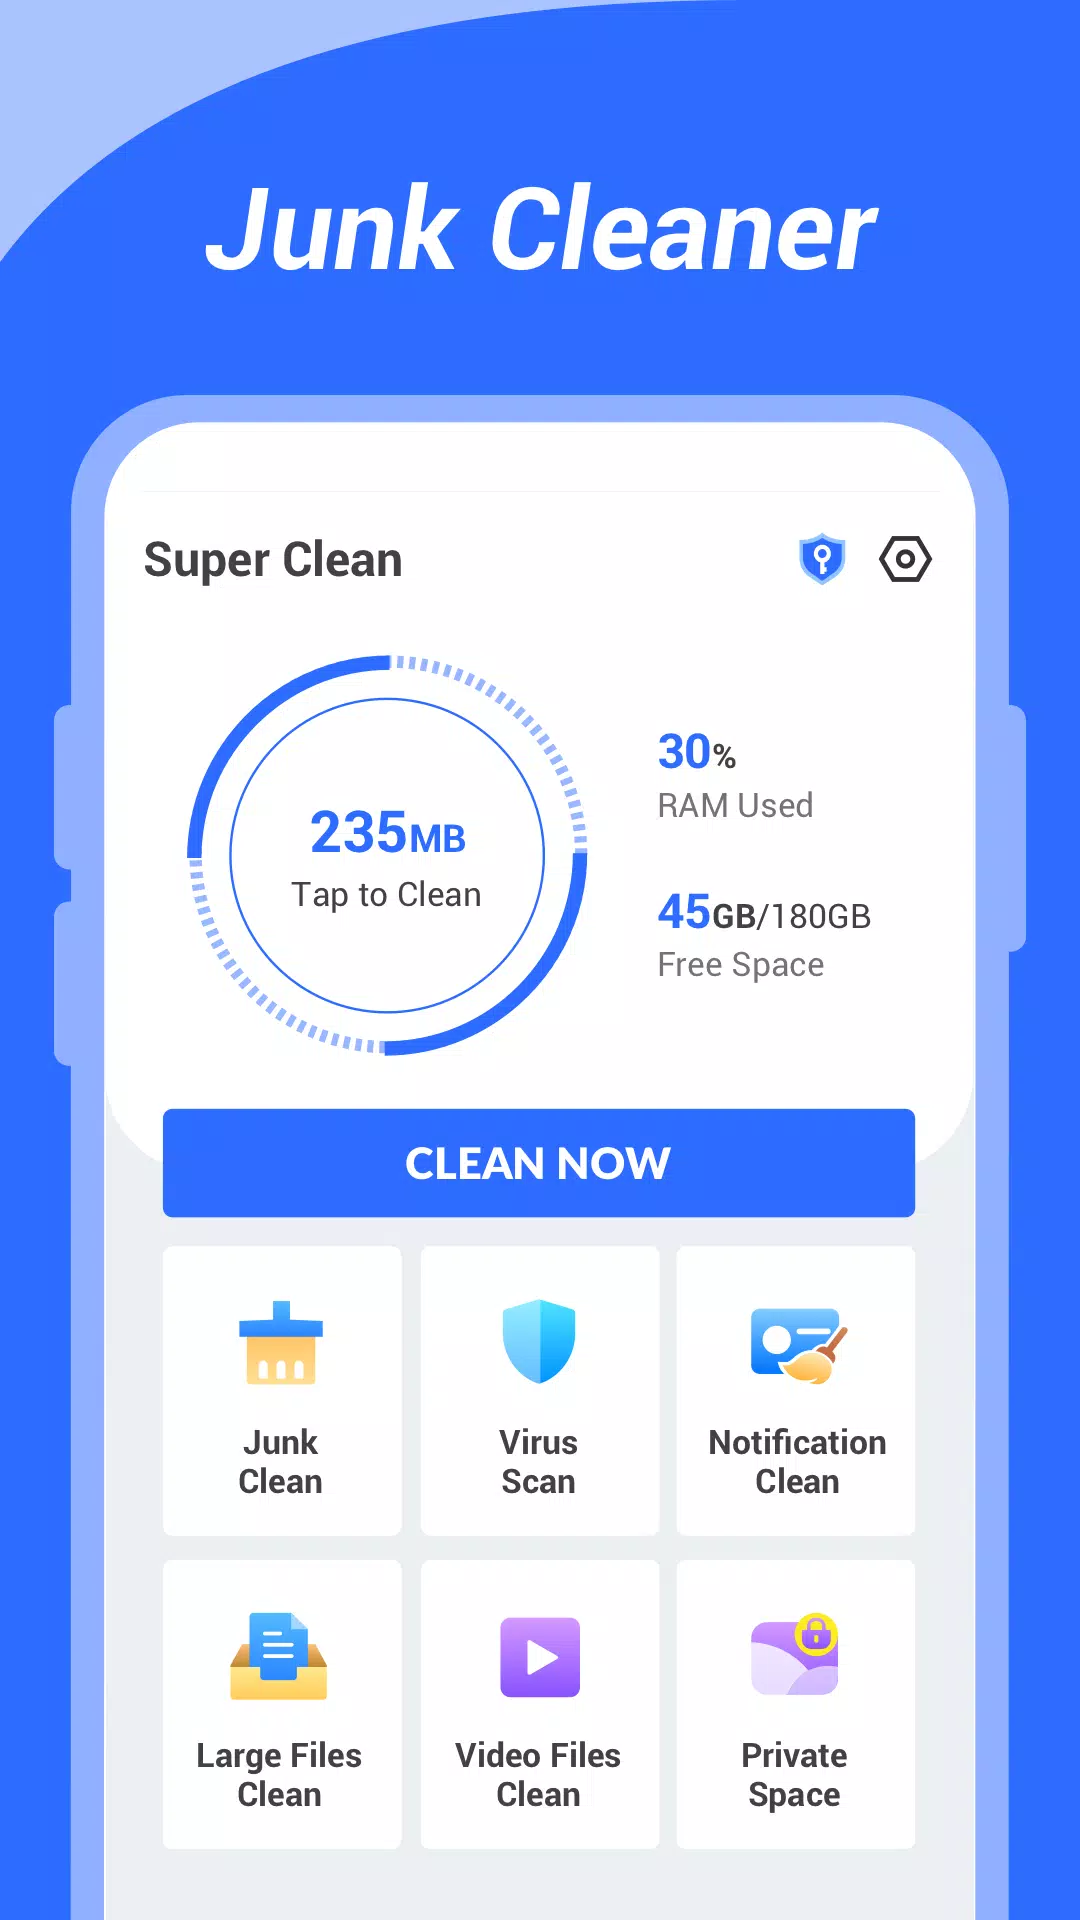 Er Super Clean en gratis app?